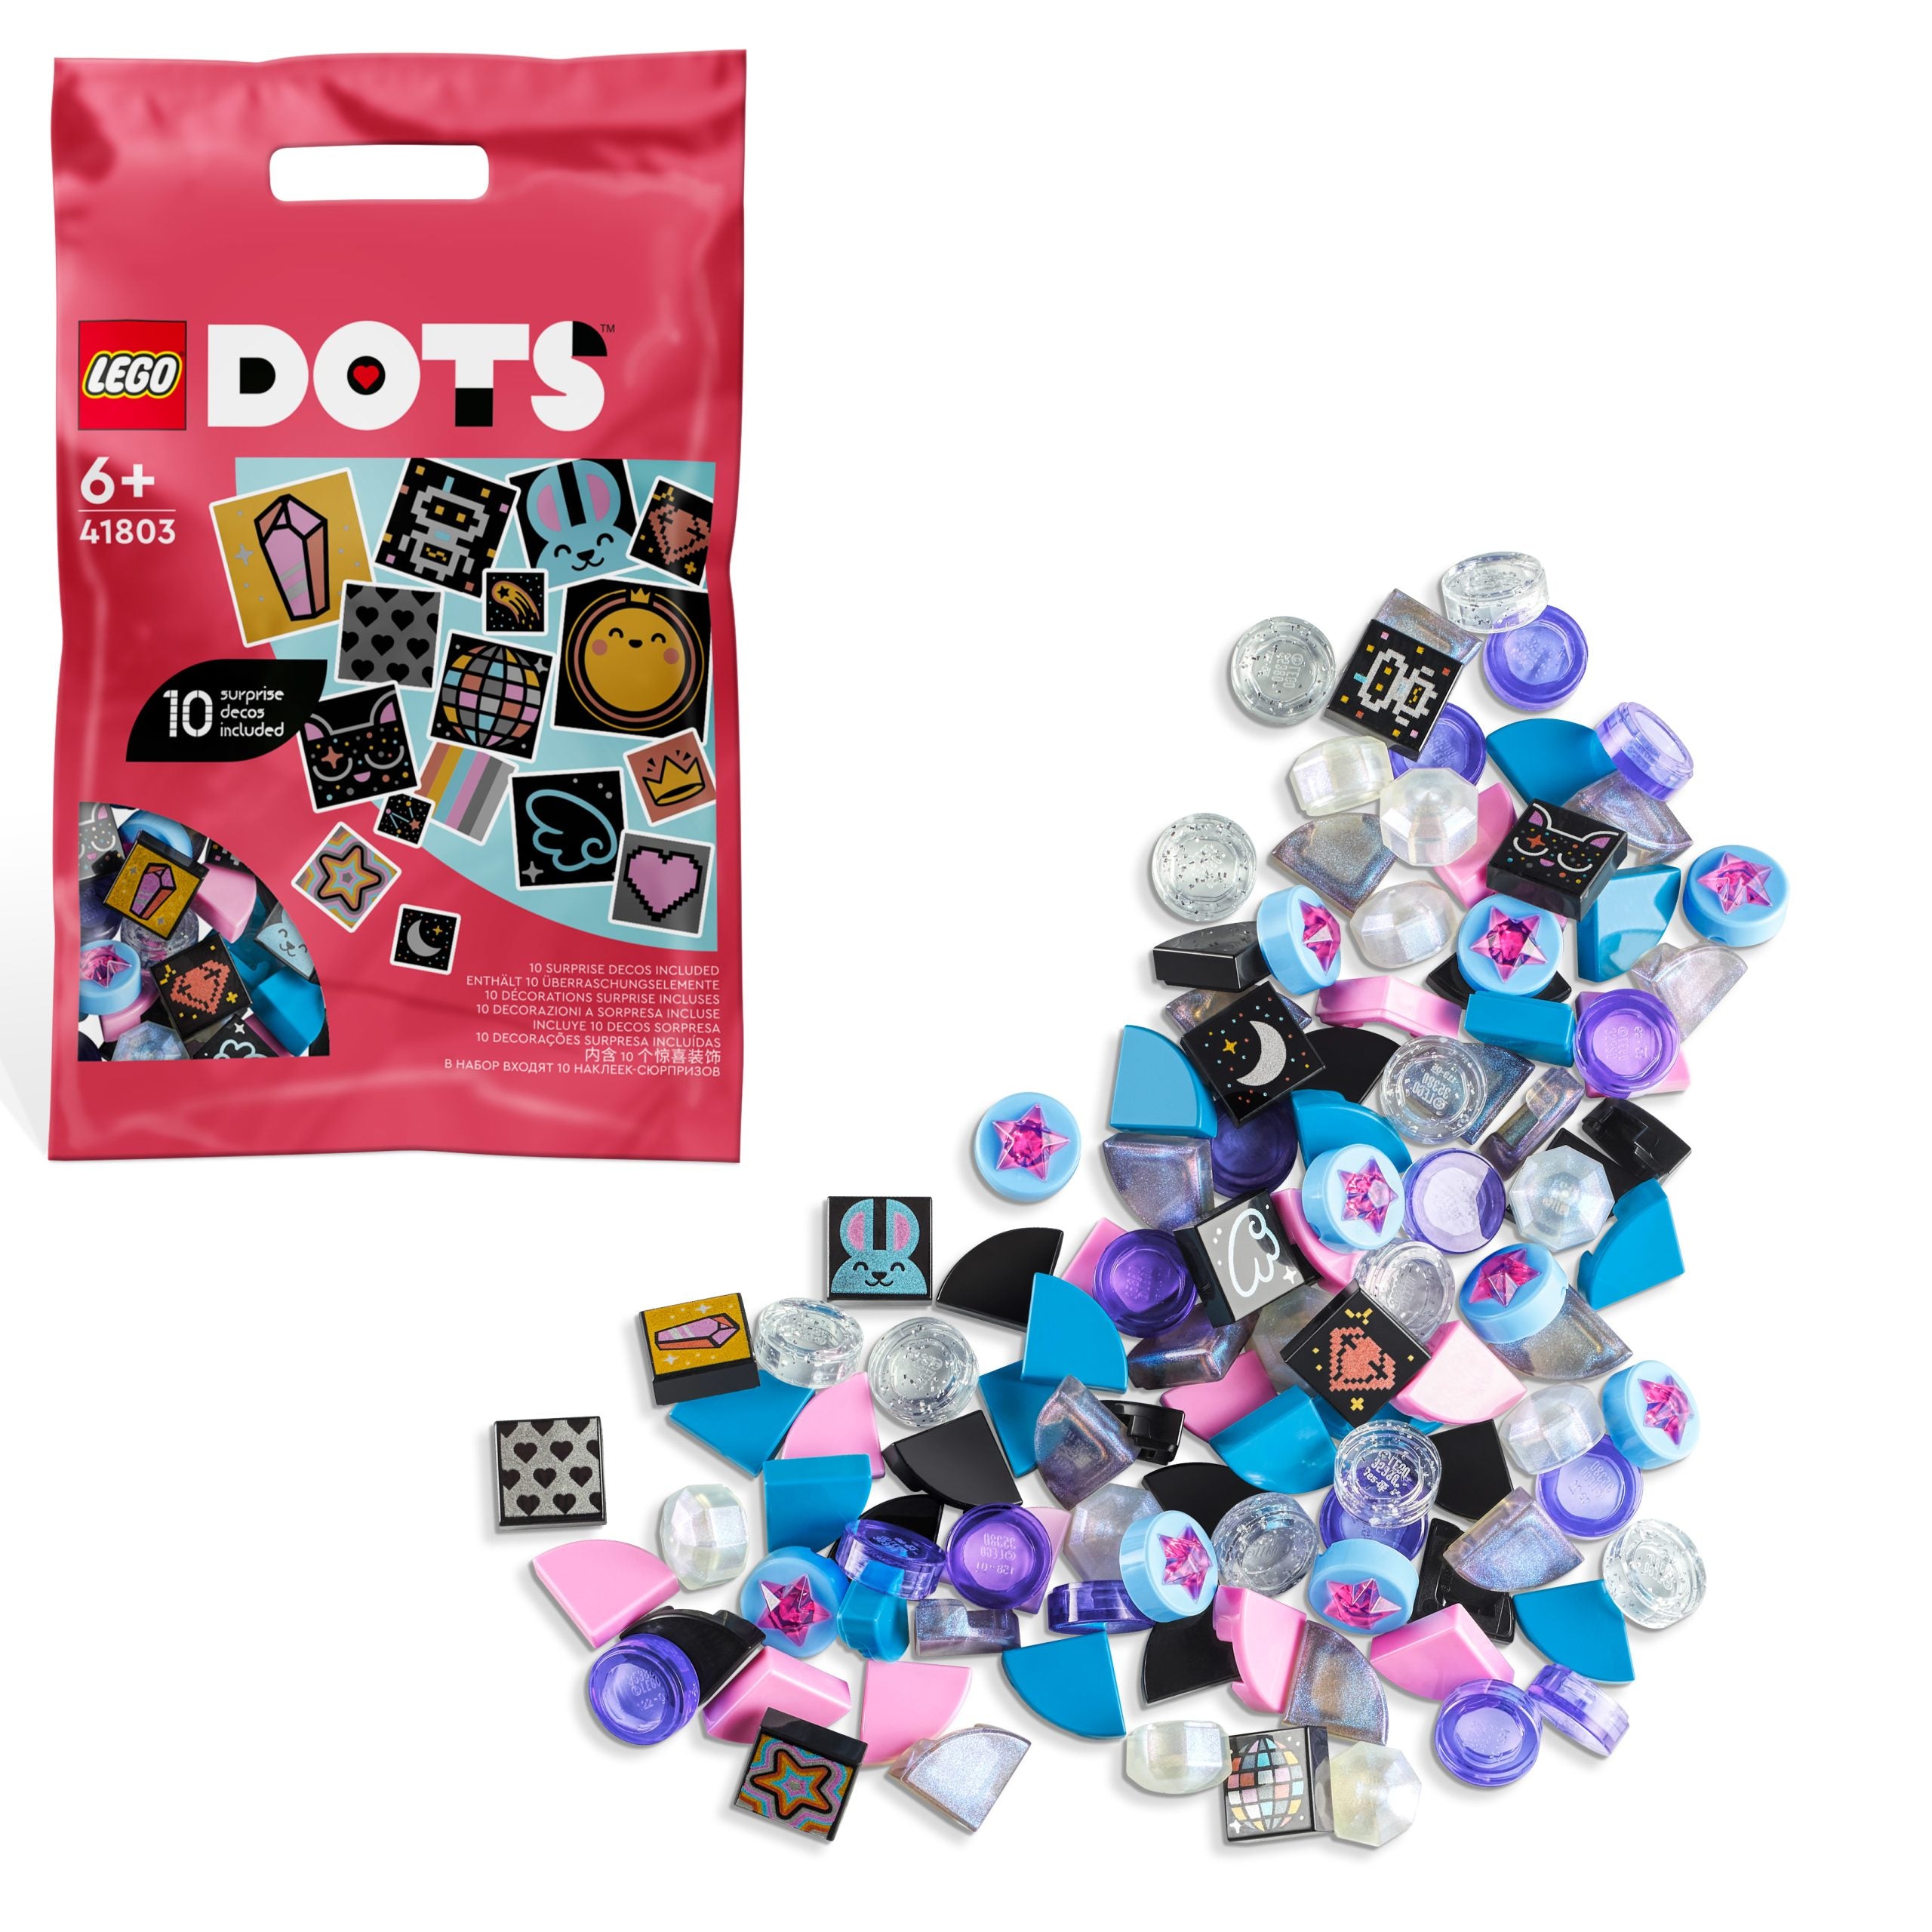 41803 LEGO DOTS - Extra DOTS Serie 8  Brilla e scintilla